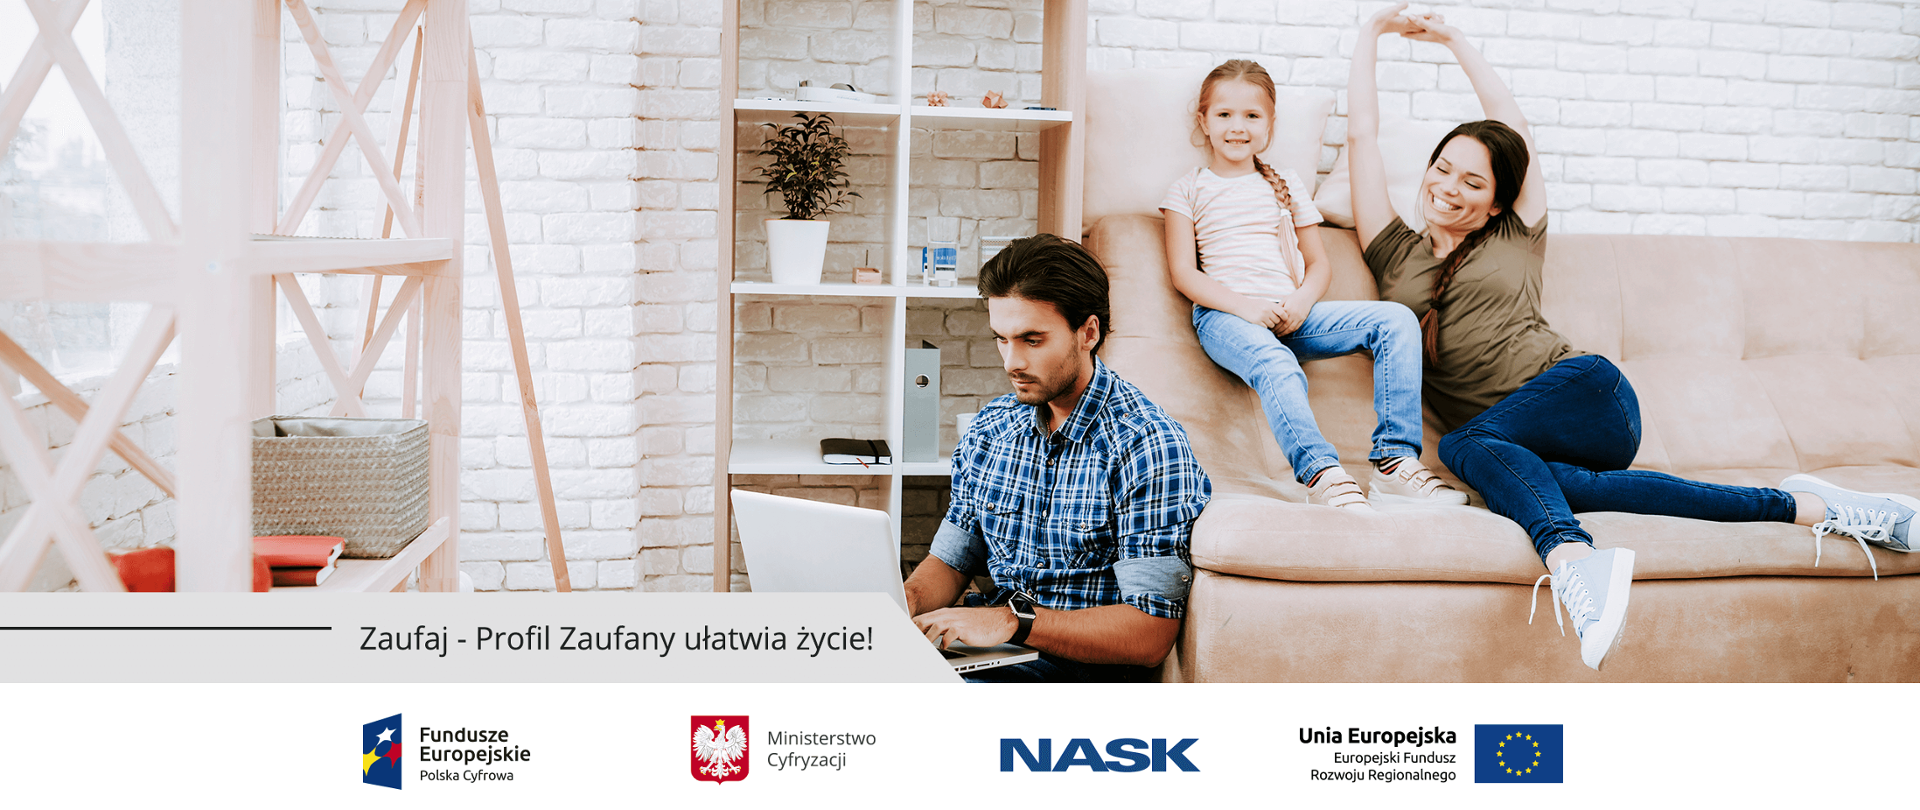 Rodzina - ojciec korzysta z laptopa, mama z córka siedzą na kanapie